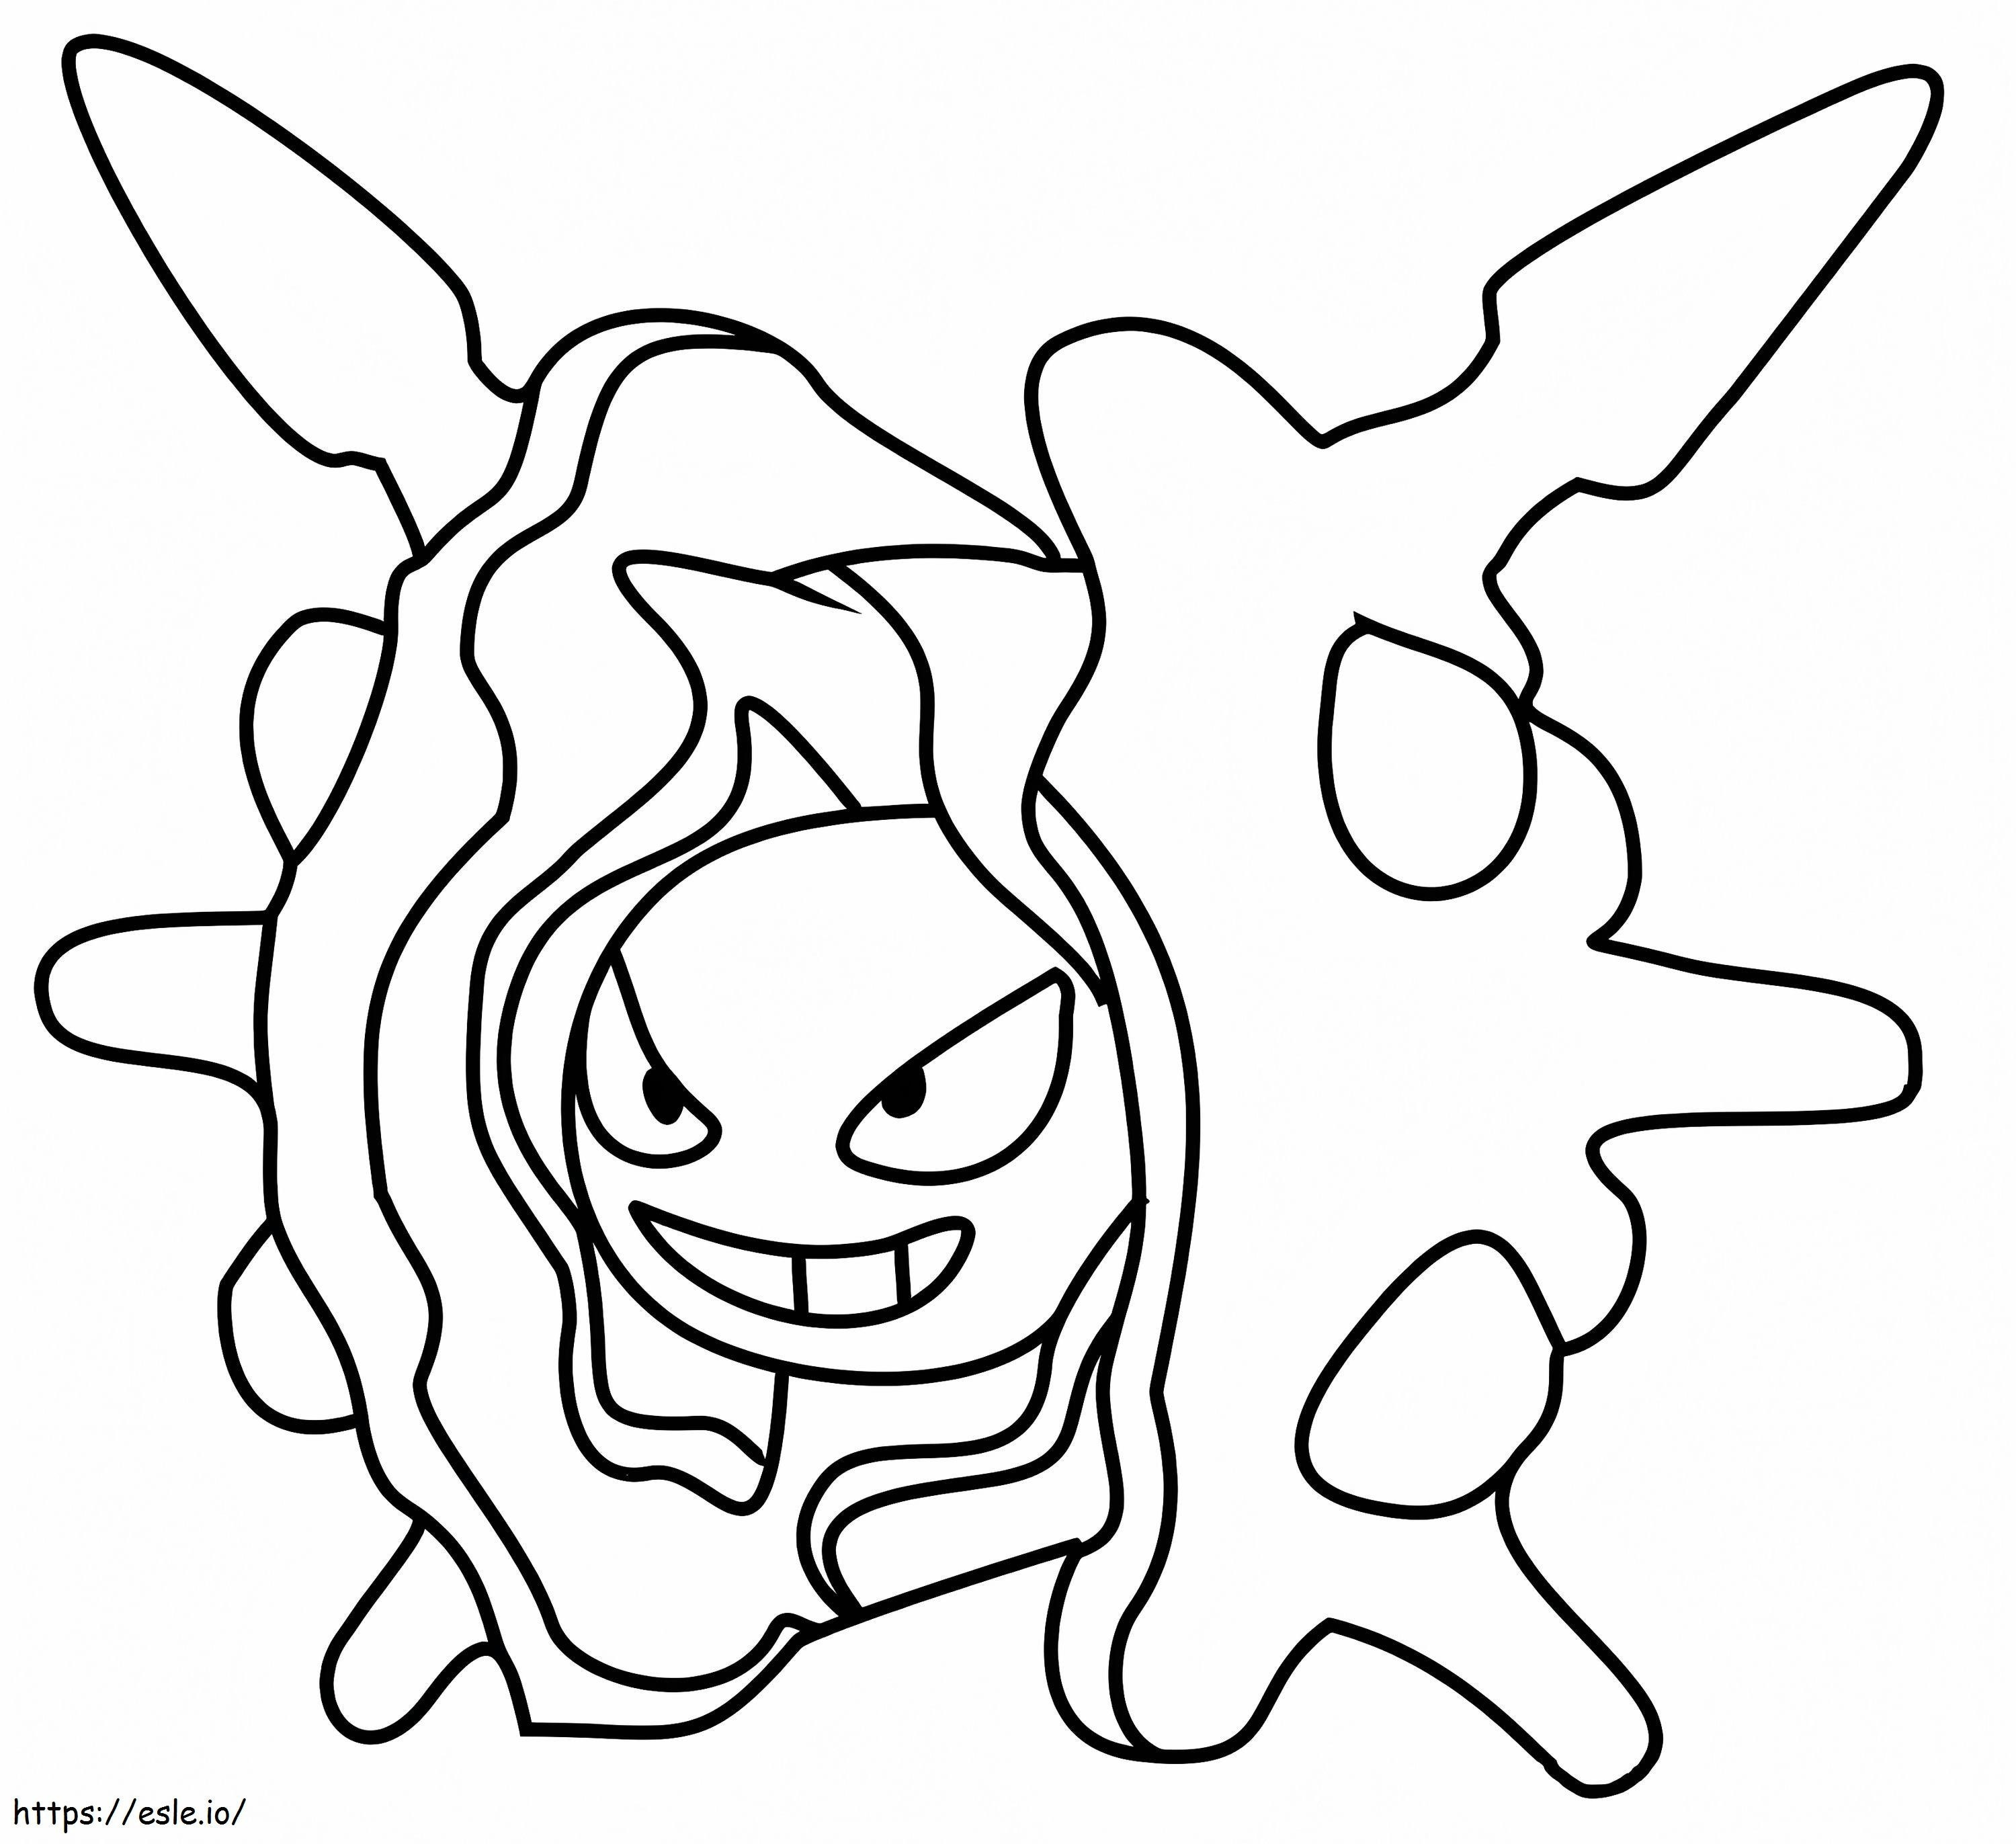 Pokémon Cloyster para colorear